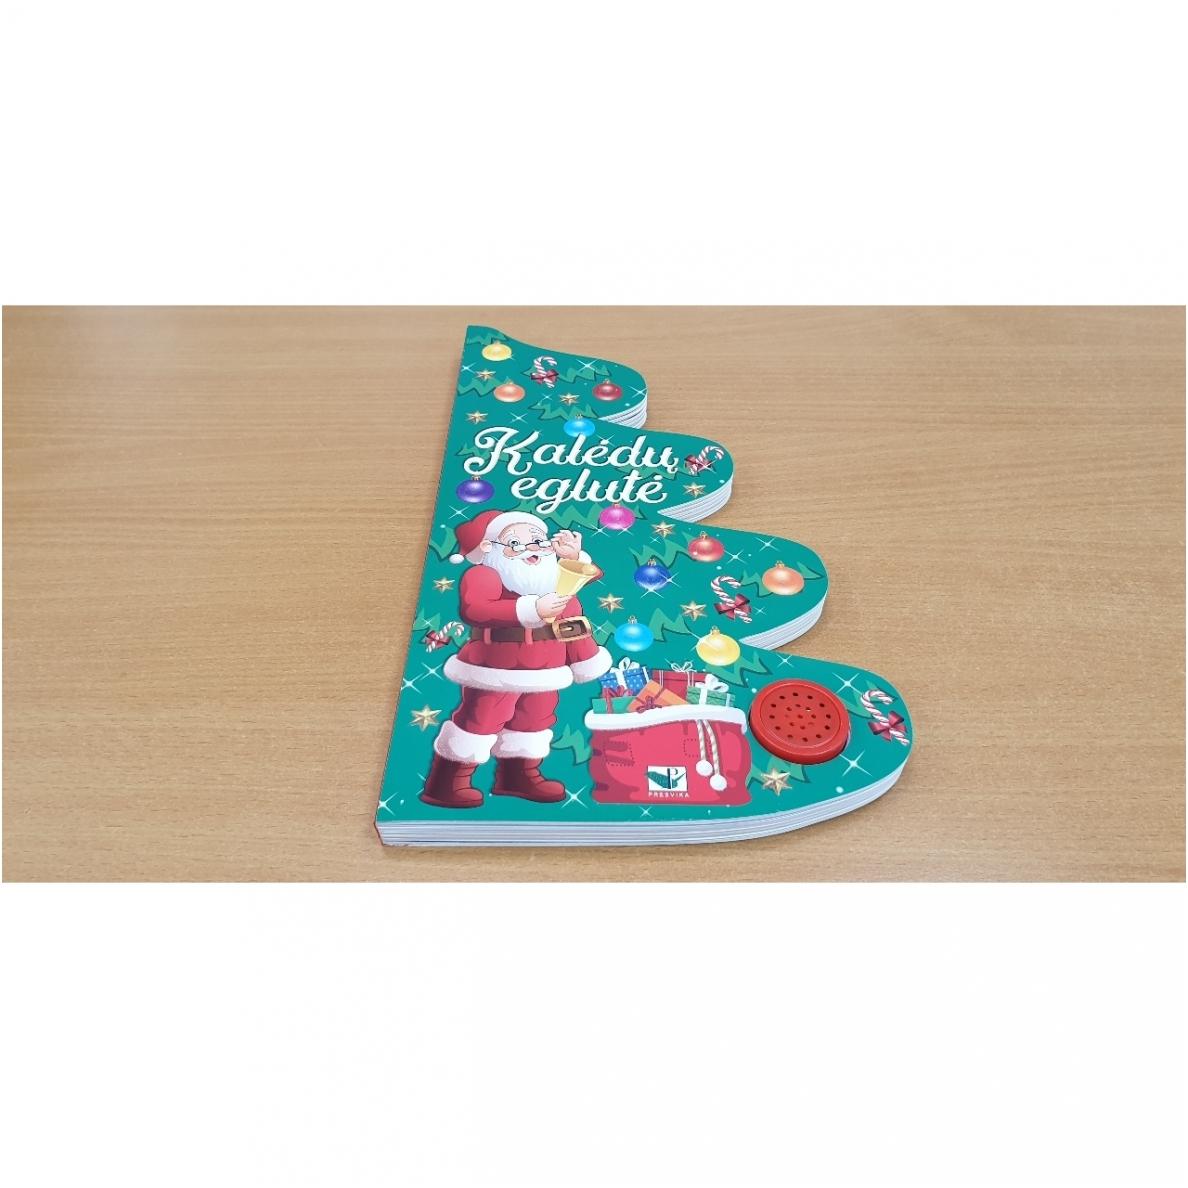 Kalėdų eglutė. Knyga-eglutė su garsais 2-3 metų vaikams Laukiam Kalėdų (knyga su defektais) | 